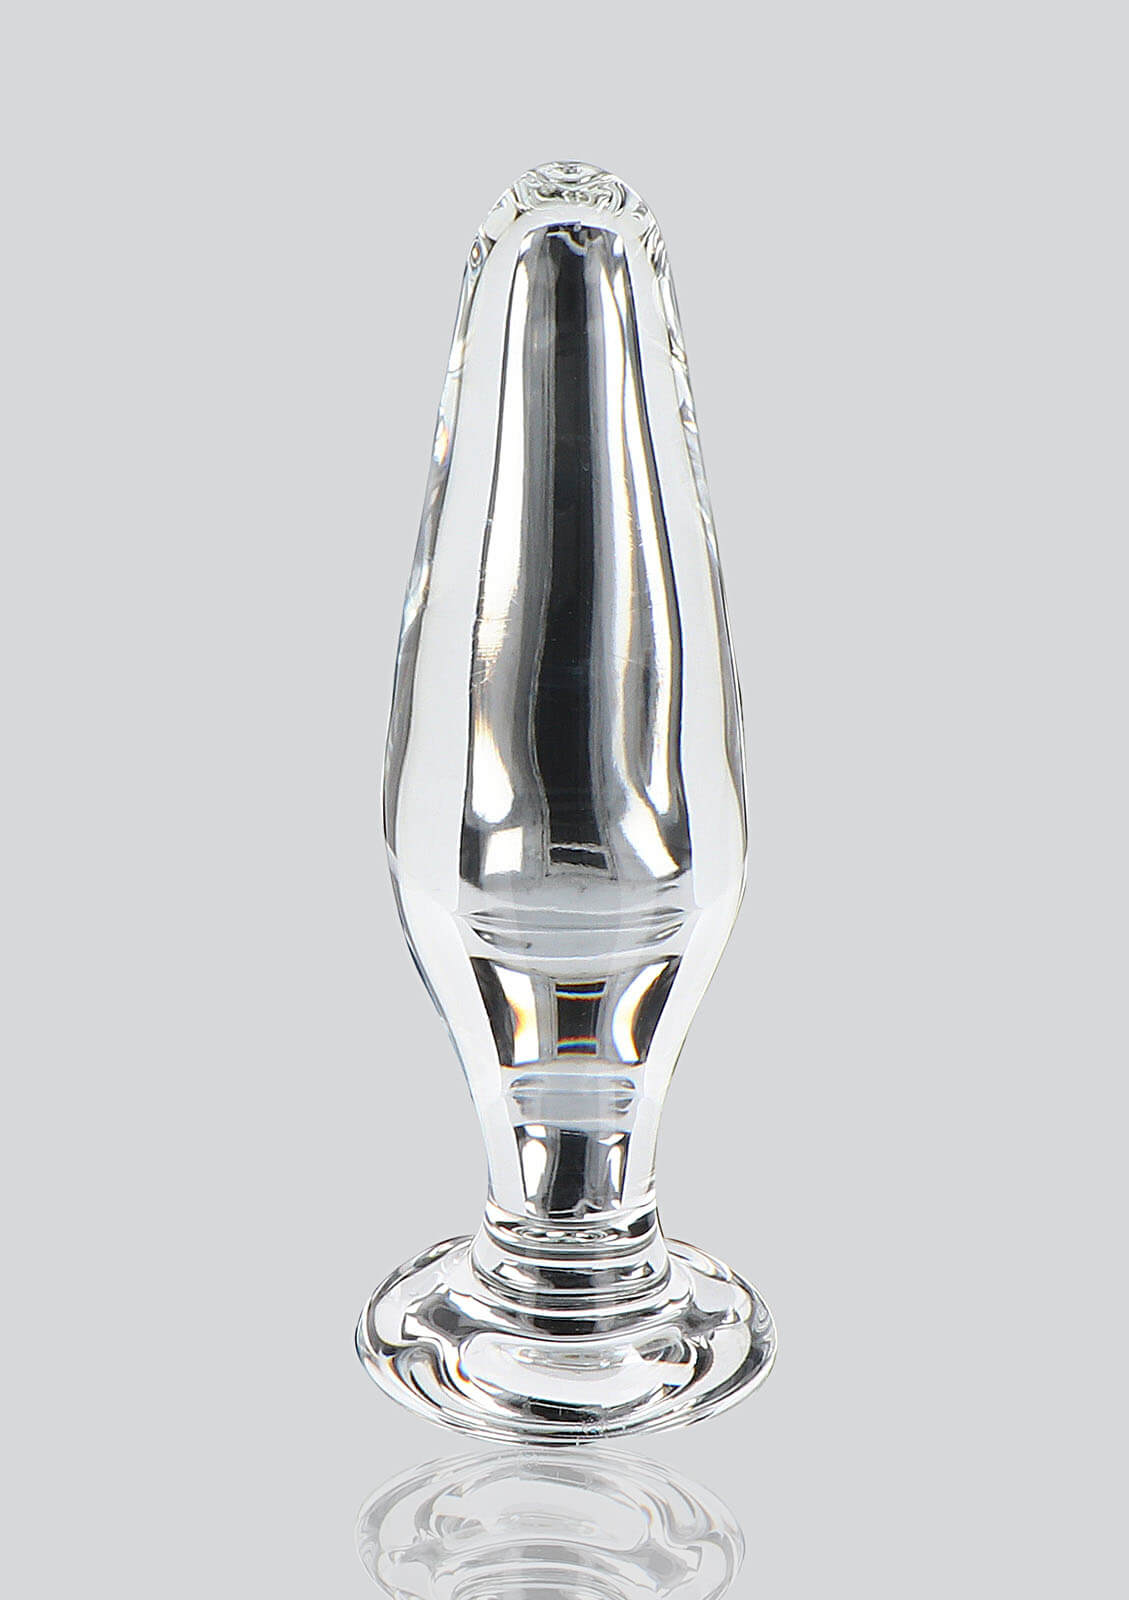 ToyJoy Glass Worxx Star Sparkler (12 cm)